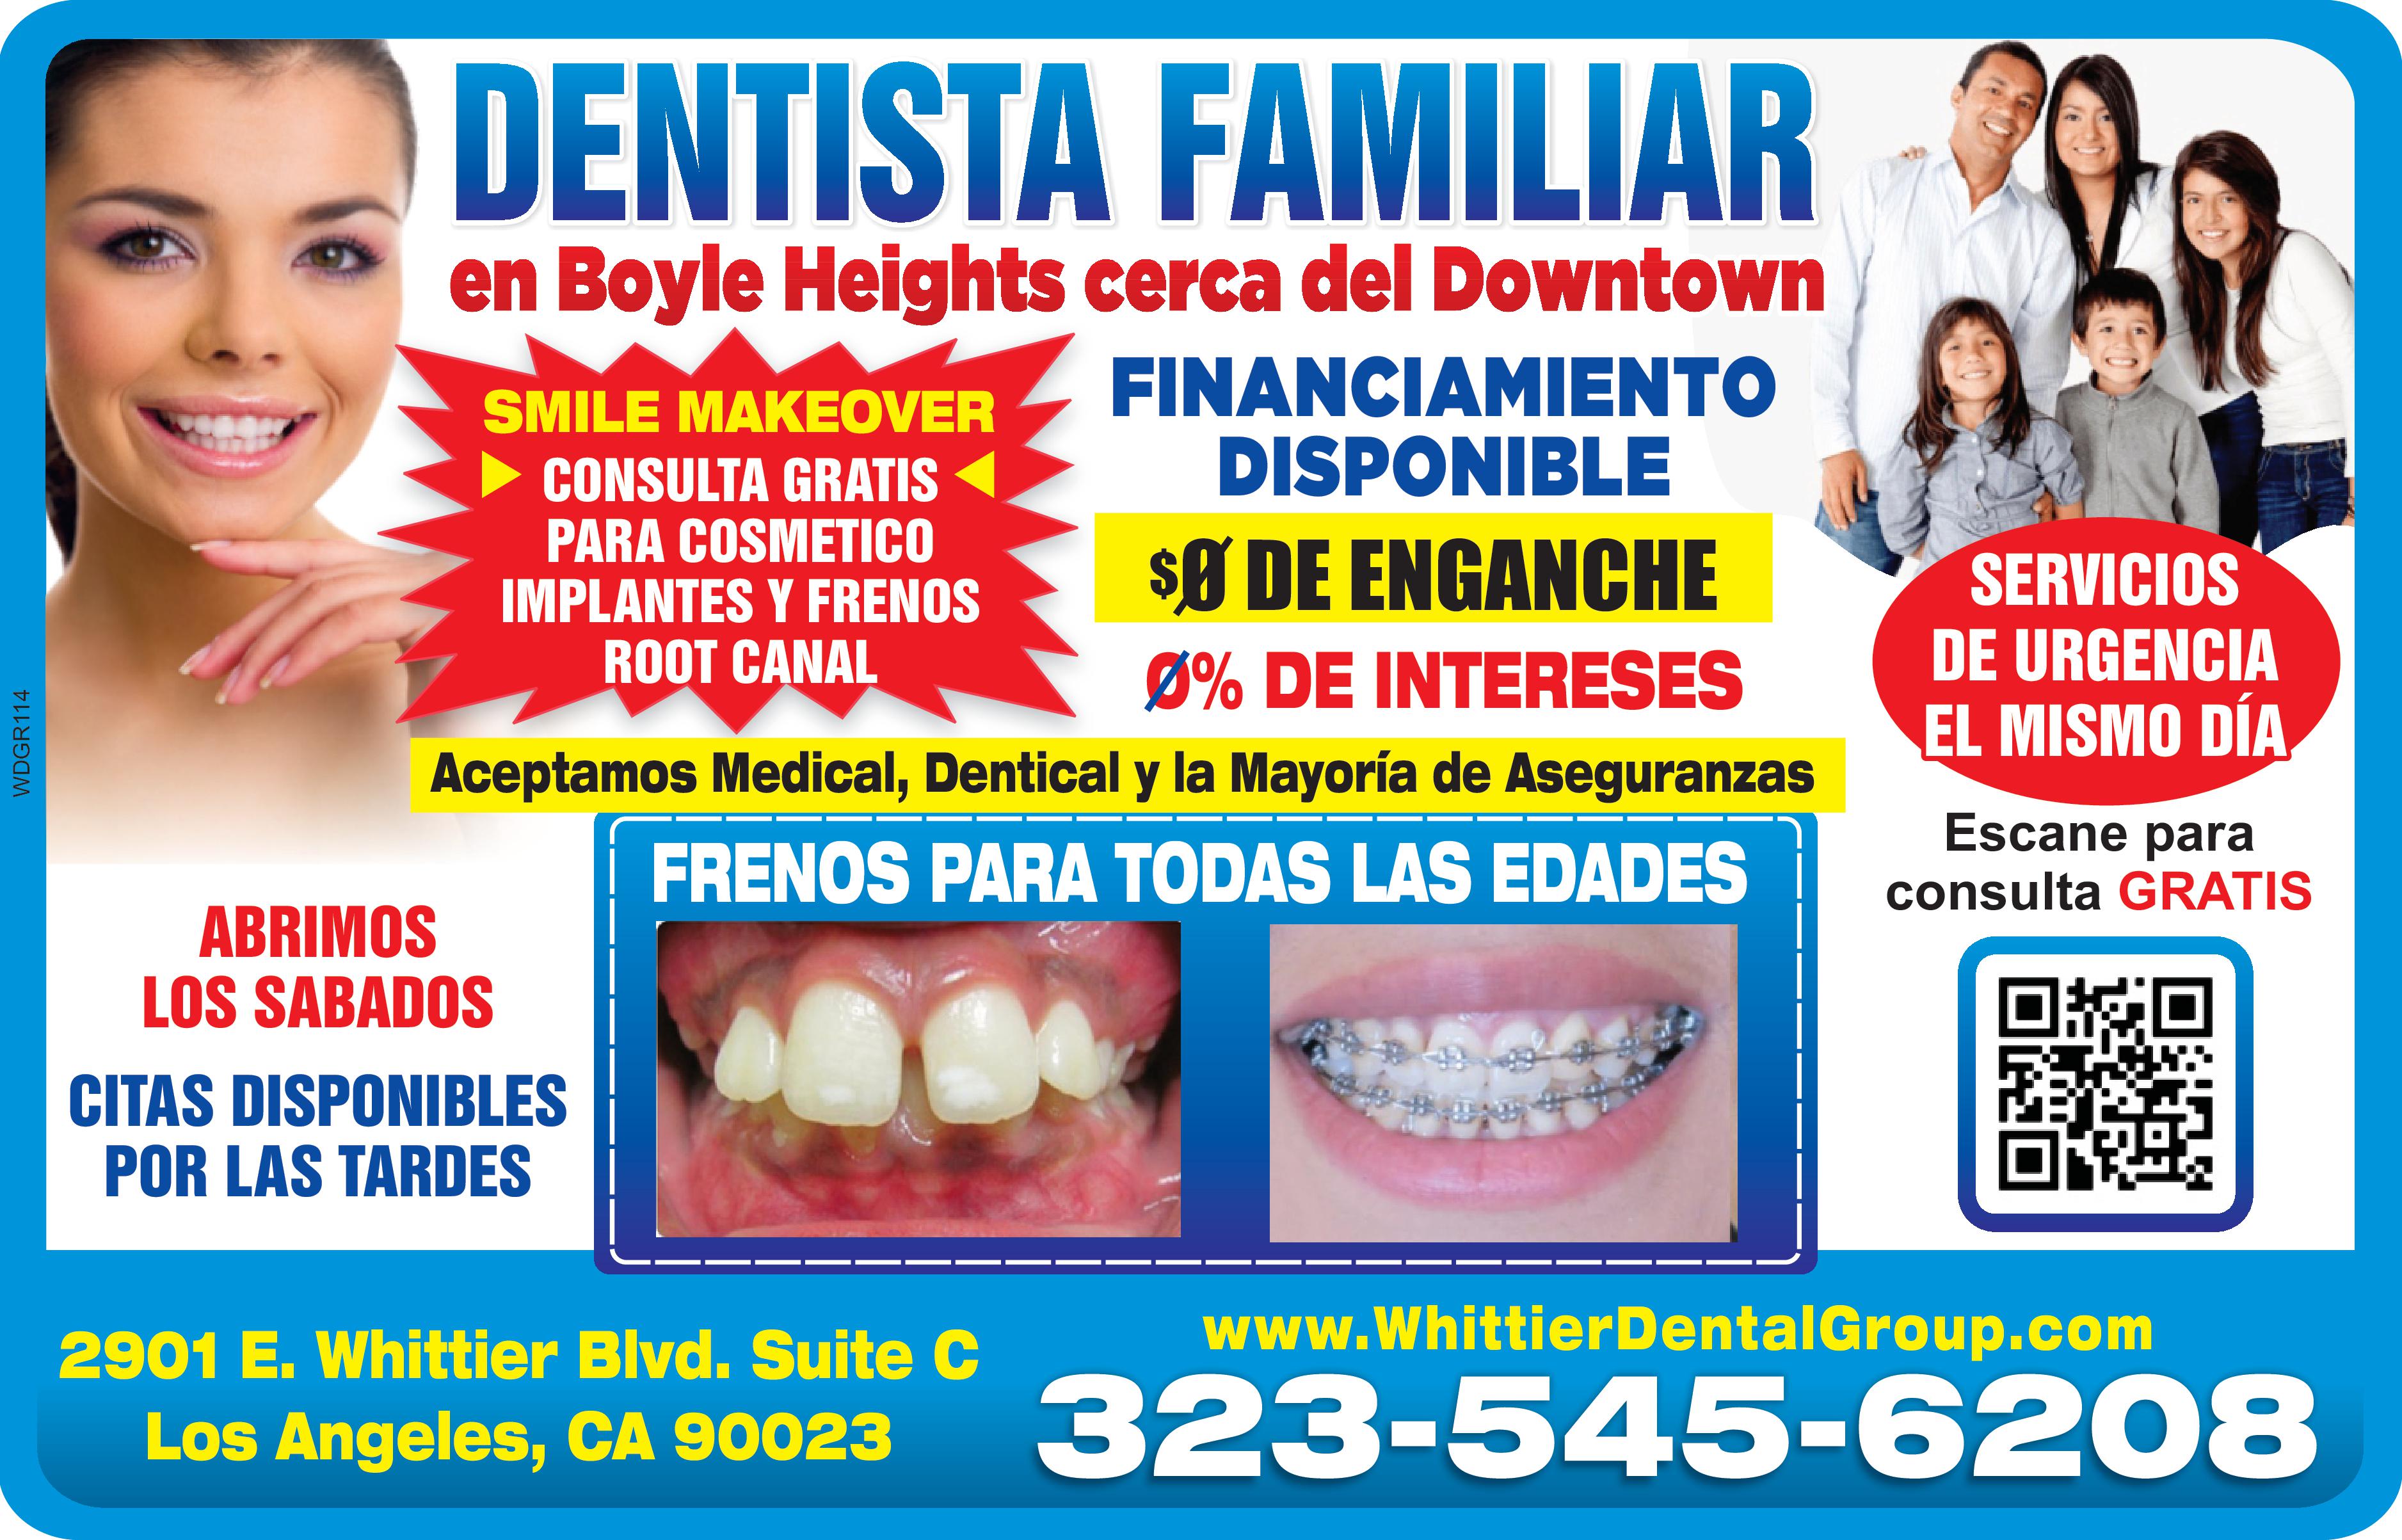 DENTISTA FAMILIAR 
en Boyle Heights cerca del Downtown
SMILE MAKEOVER CONSULTA GRATIS PARA COSMETICO IMPLANTES Y FRENOS ROOT CANAL FINANCIAMIENTO DISPONIBLE 0 DE ENGANCHE 0% DE INTERESES. SERVICIOS DE URGENCIA EL MISMO DIA
Aceptamos Medical, Dentical y la Mayoria de Aseguranzas FRENOS PARA TODAS LAS EDADES
ABRIMOS LOS SABADOS CITAS DISPONIBLES POR LAS TARDES
2901 E. Whittier Blvd. Suite C Los Angeles, CA 90023 www.WhittierDentalGroup.com
323-545-6208